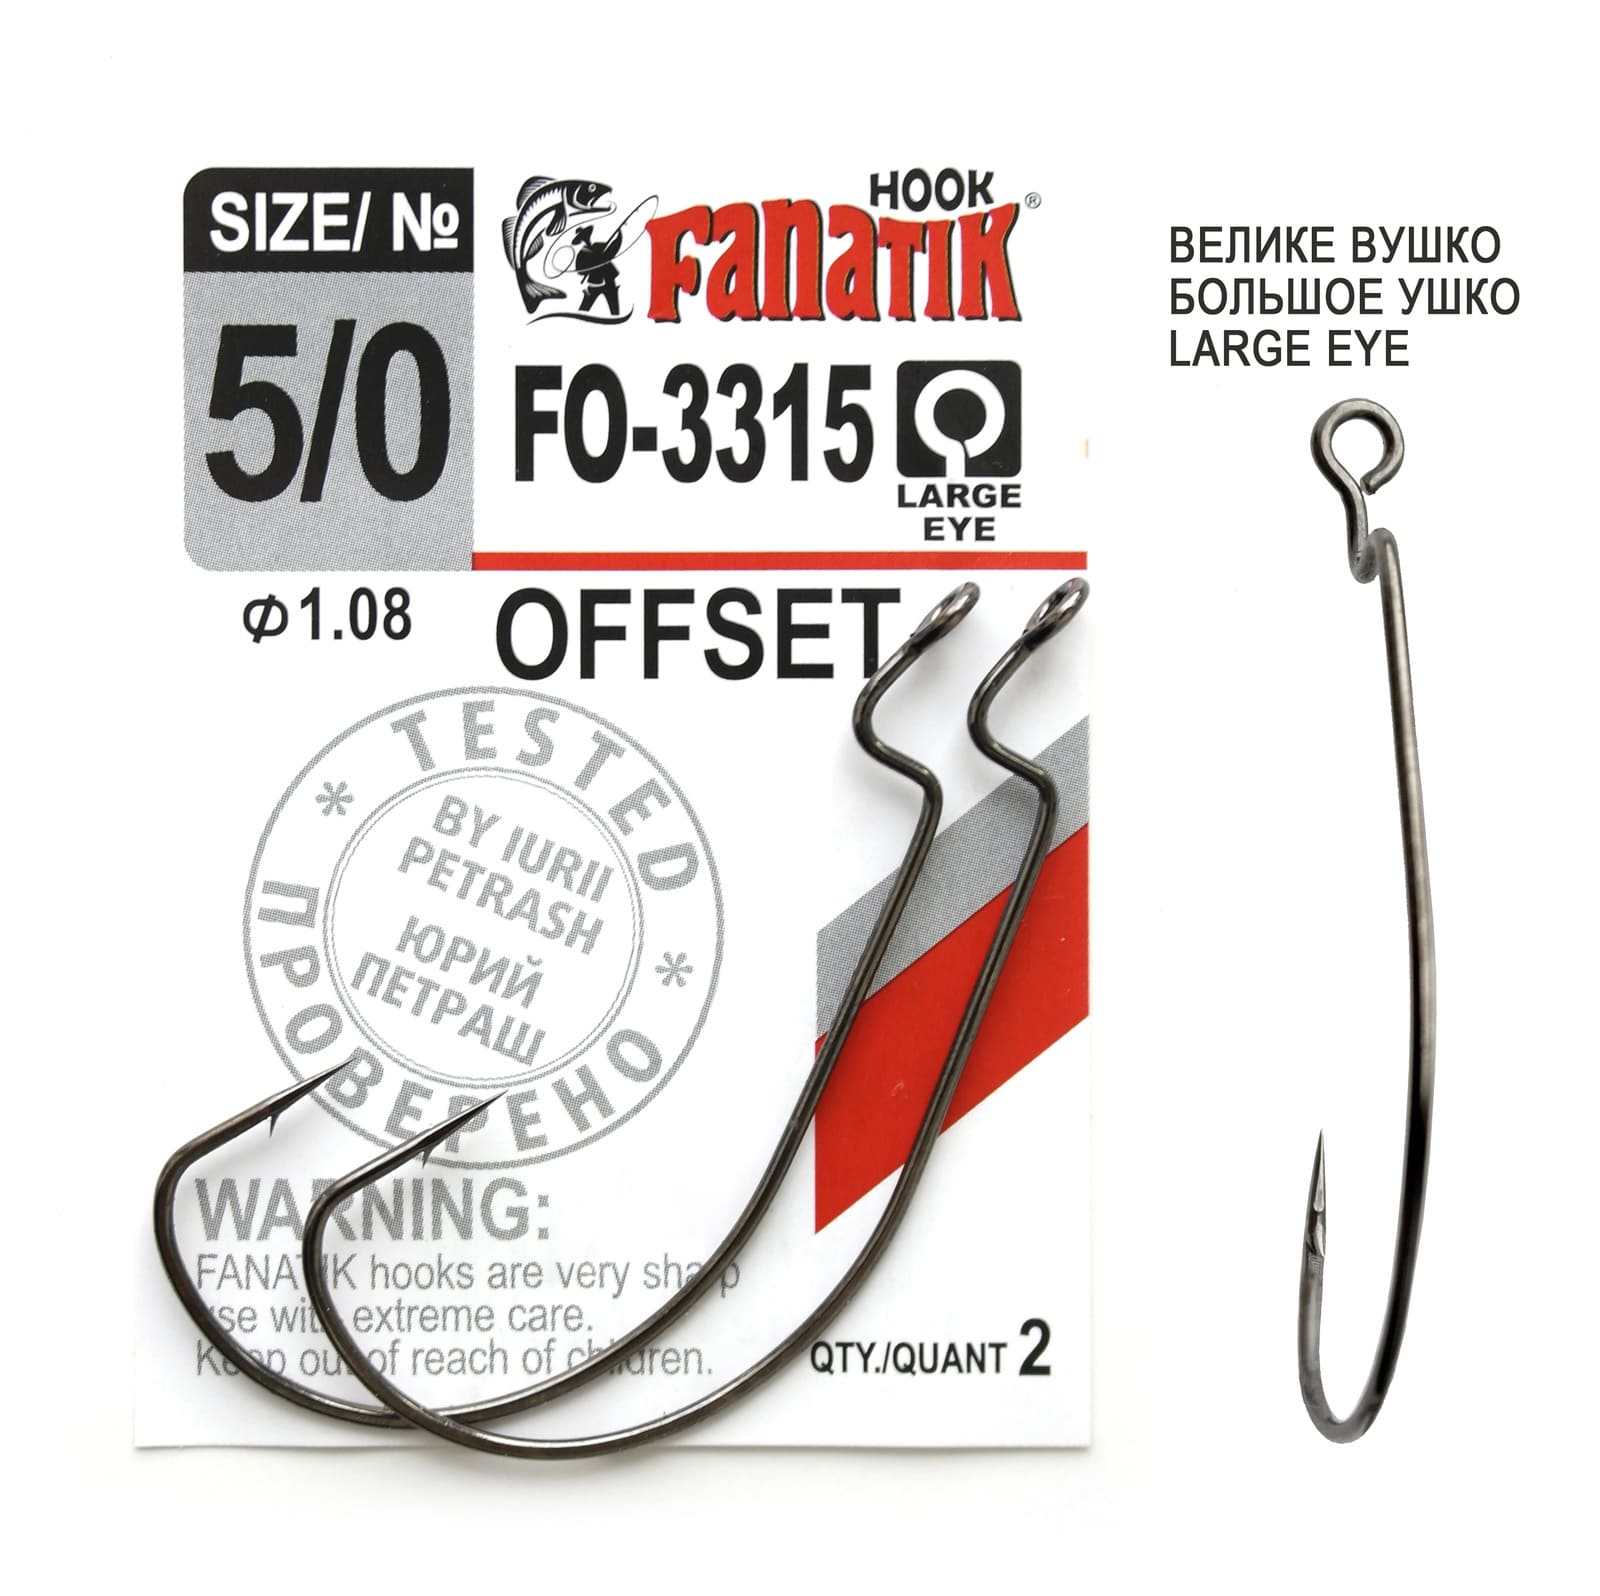 Fanatik FO-3315 - Best Offset Fishing Hooks